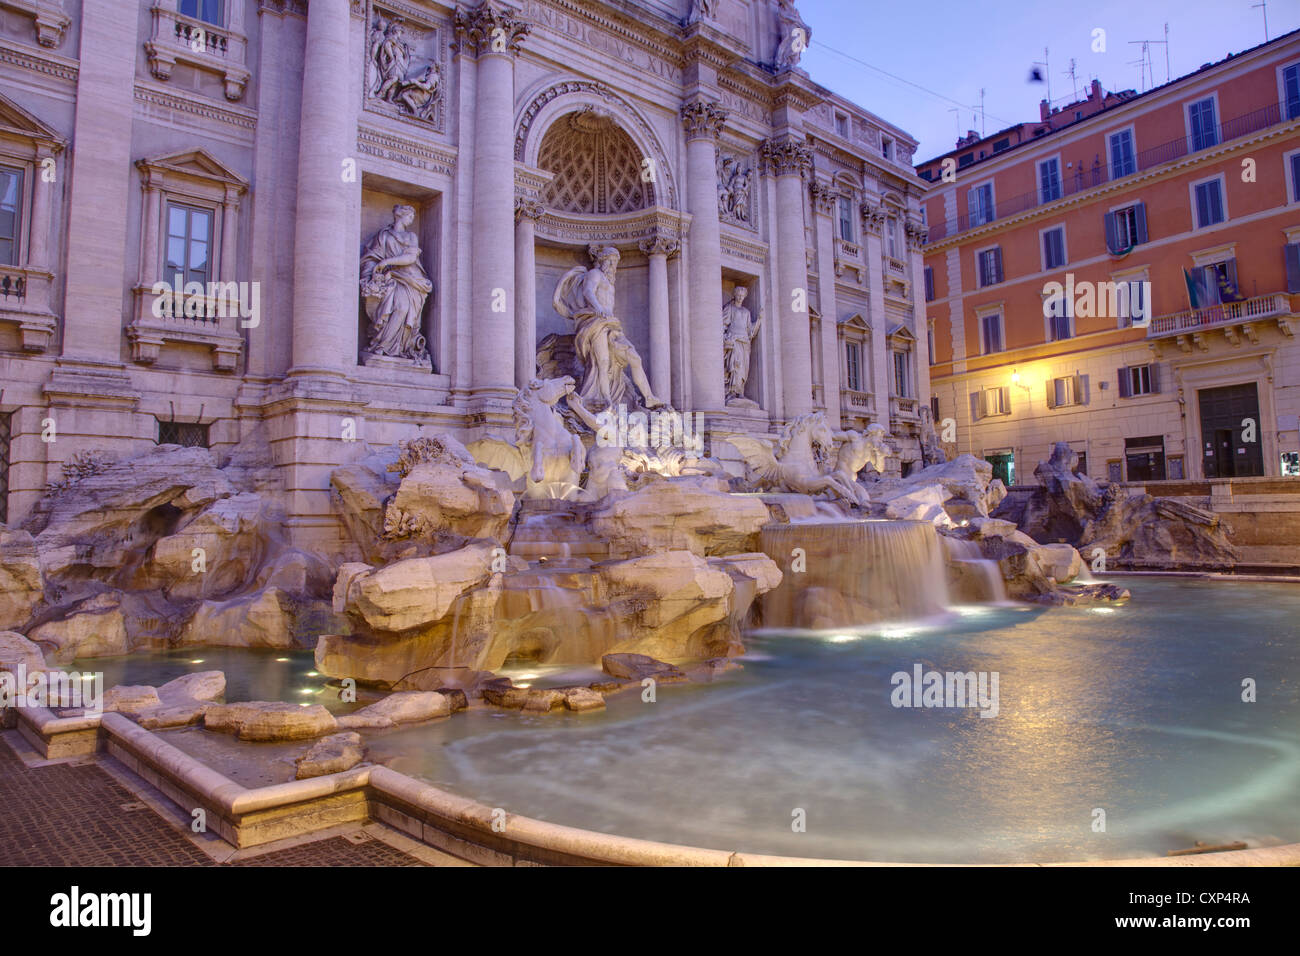 La Fontana di Trevi, Roma Italia Foto de stock